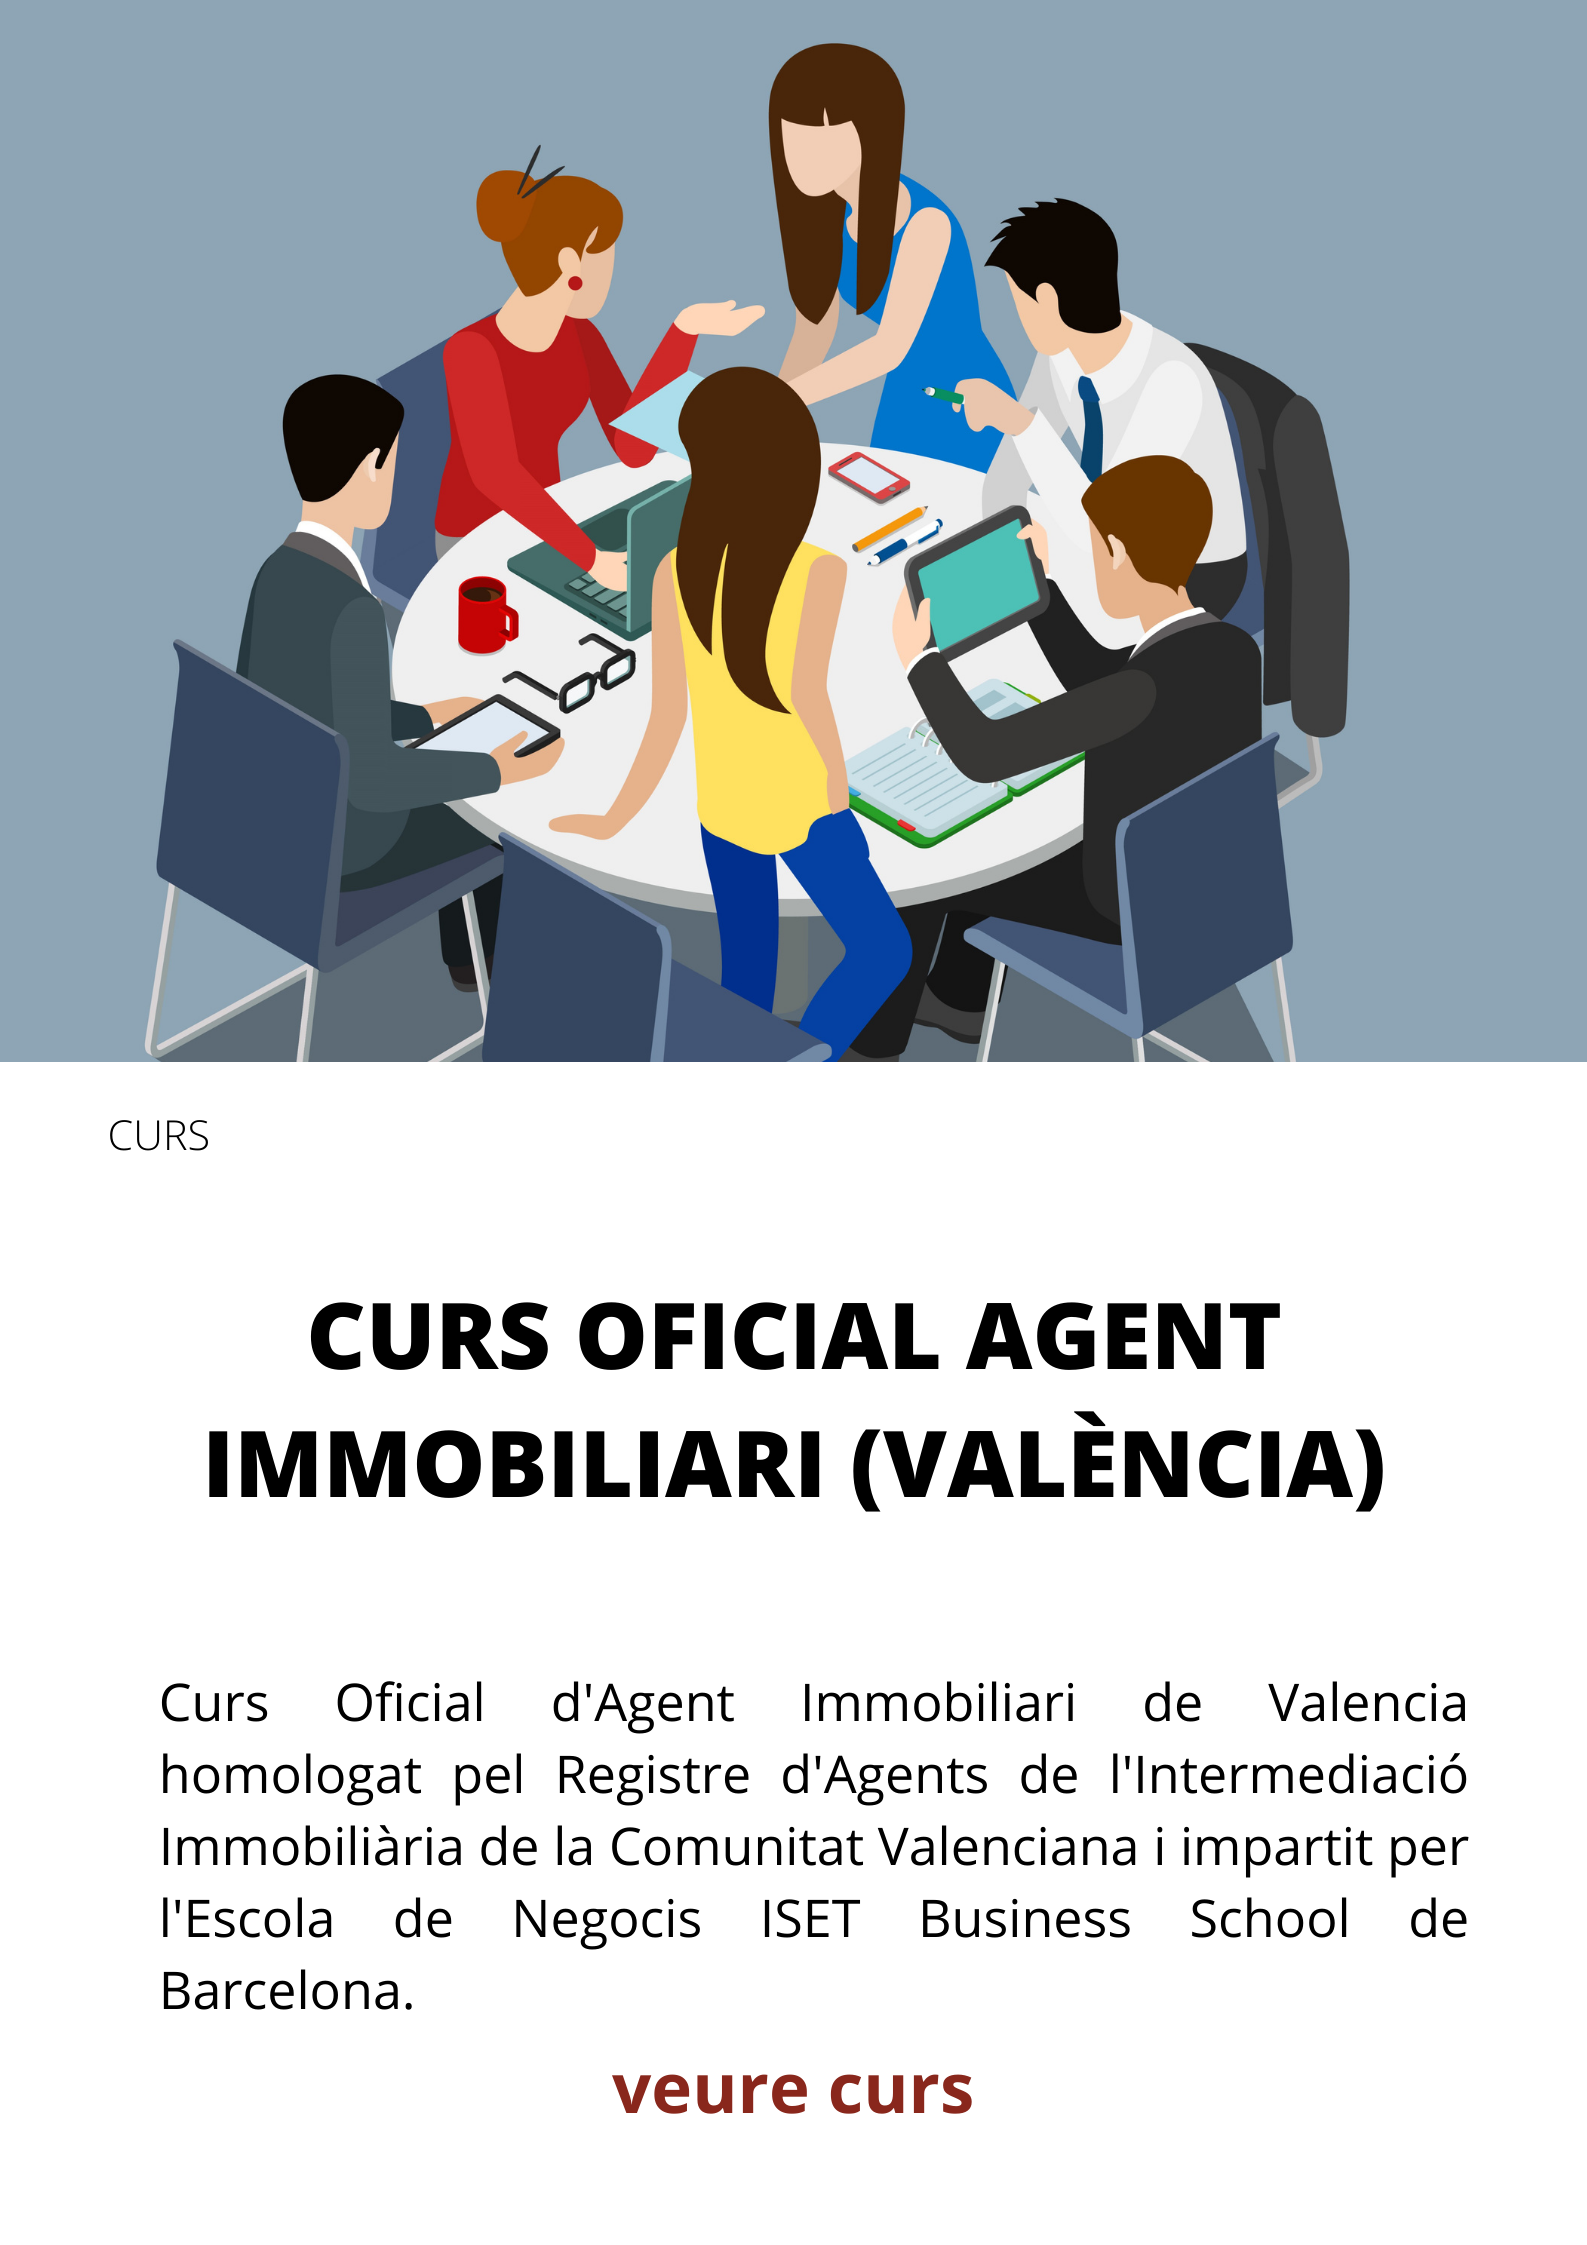 Curs d'Agent Immobiliari de València